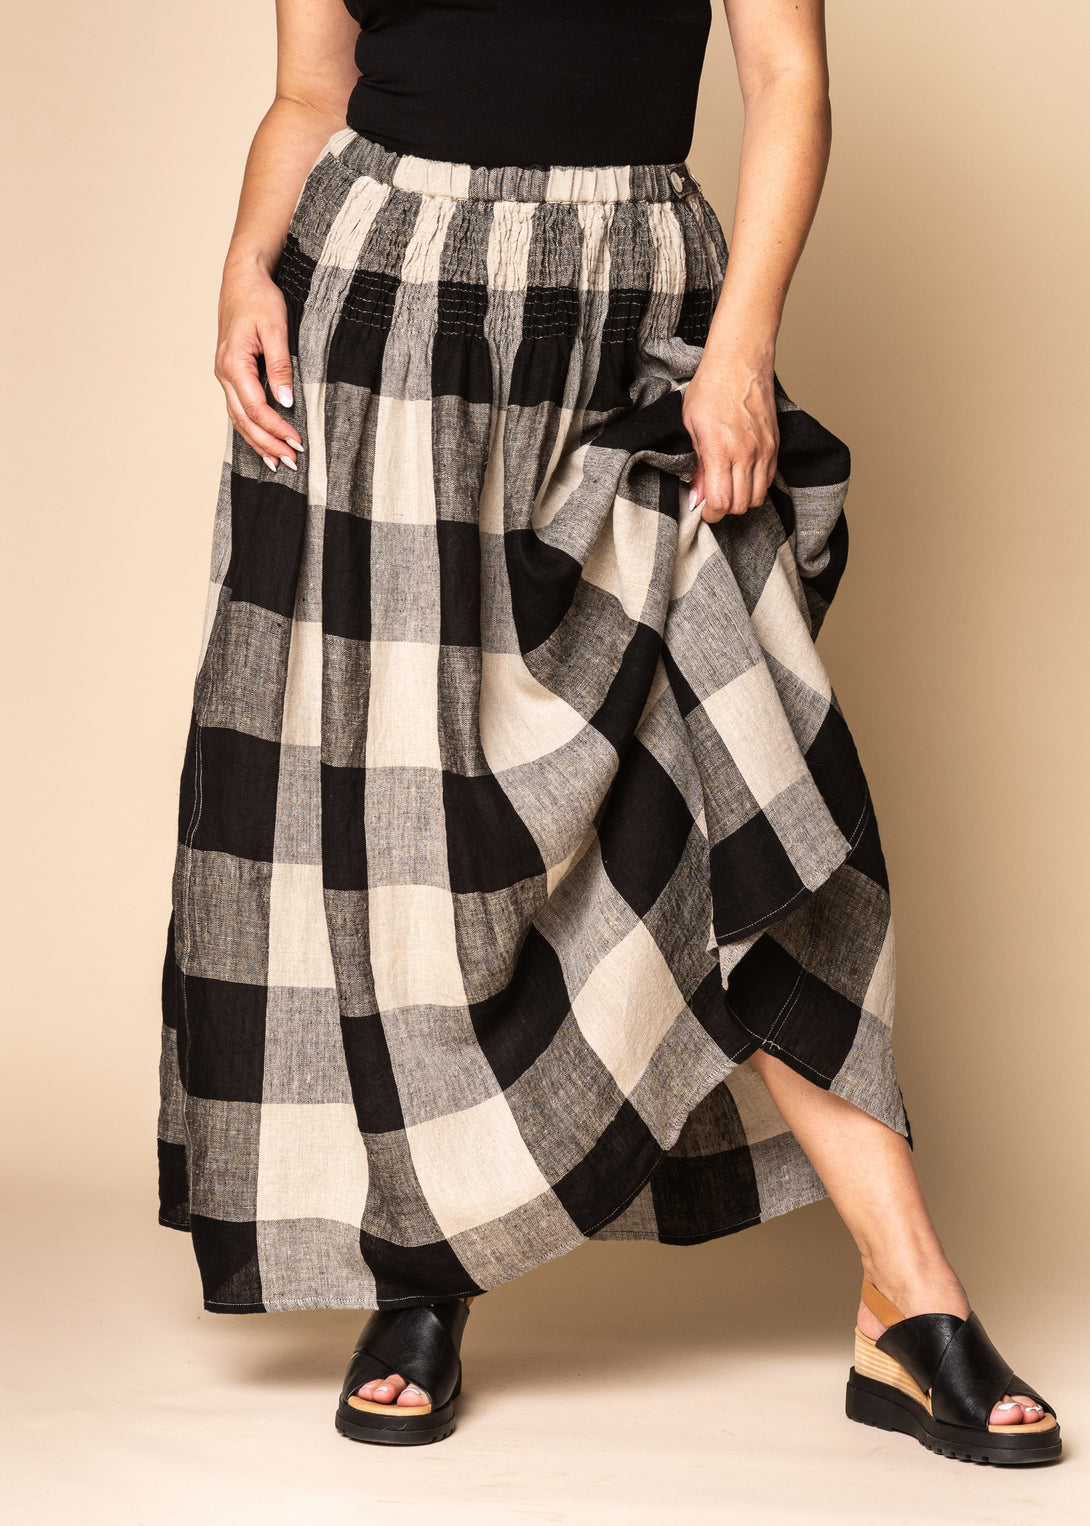 Jagoda Linen Skirt in Latte - Imagine Fashion